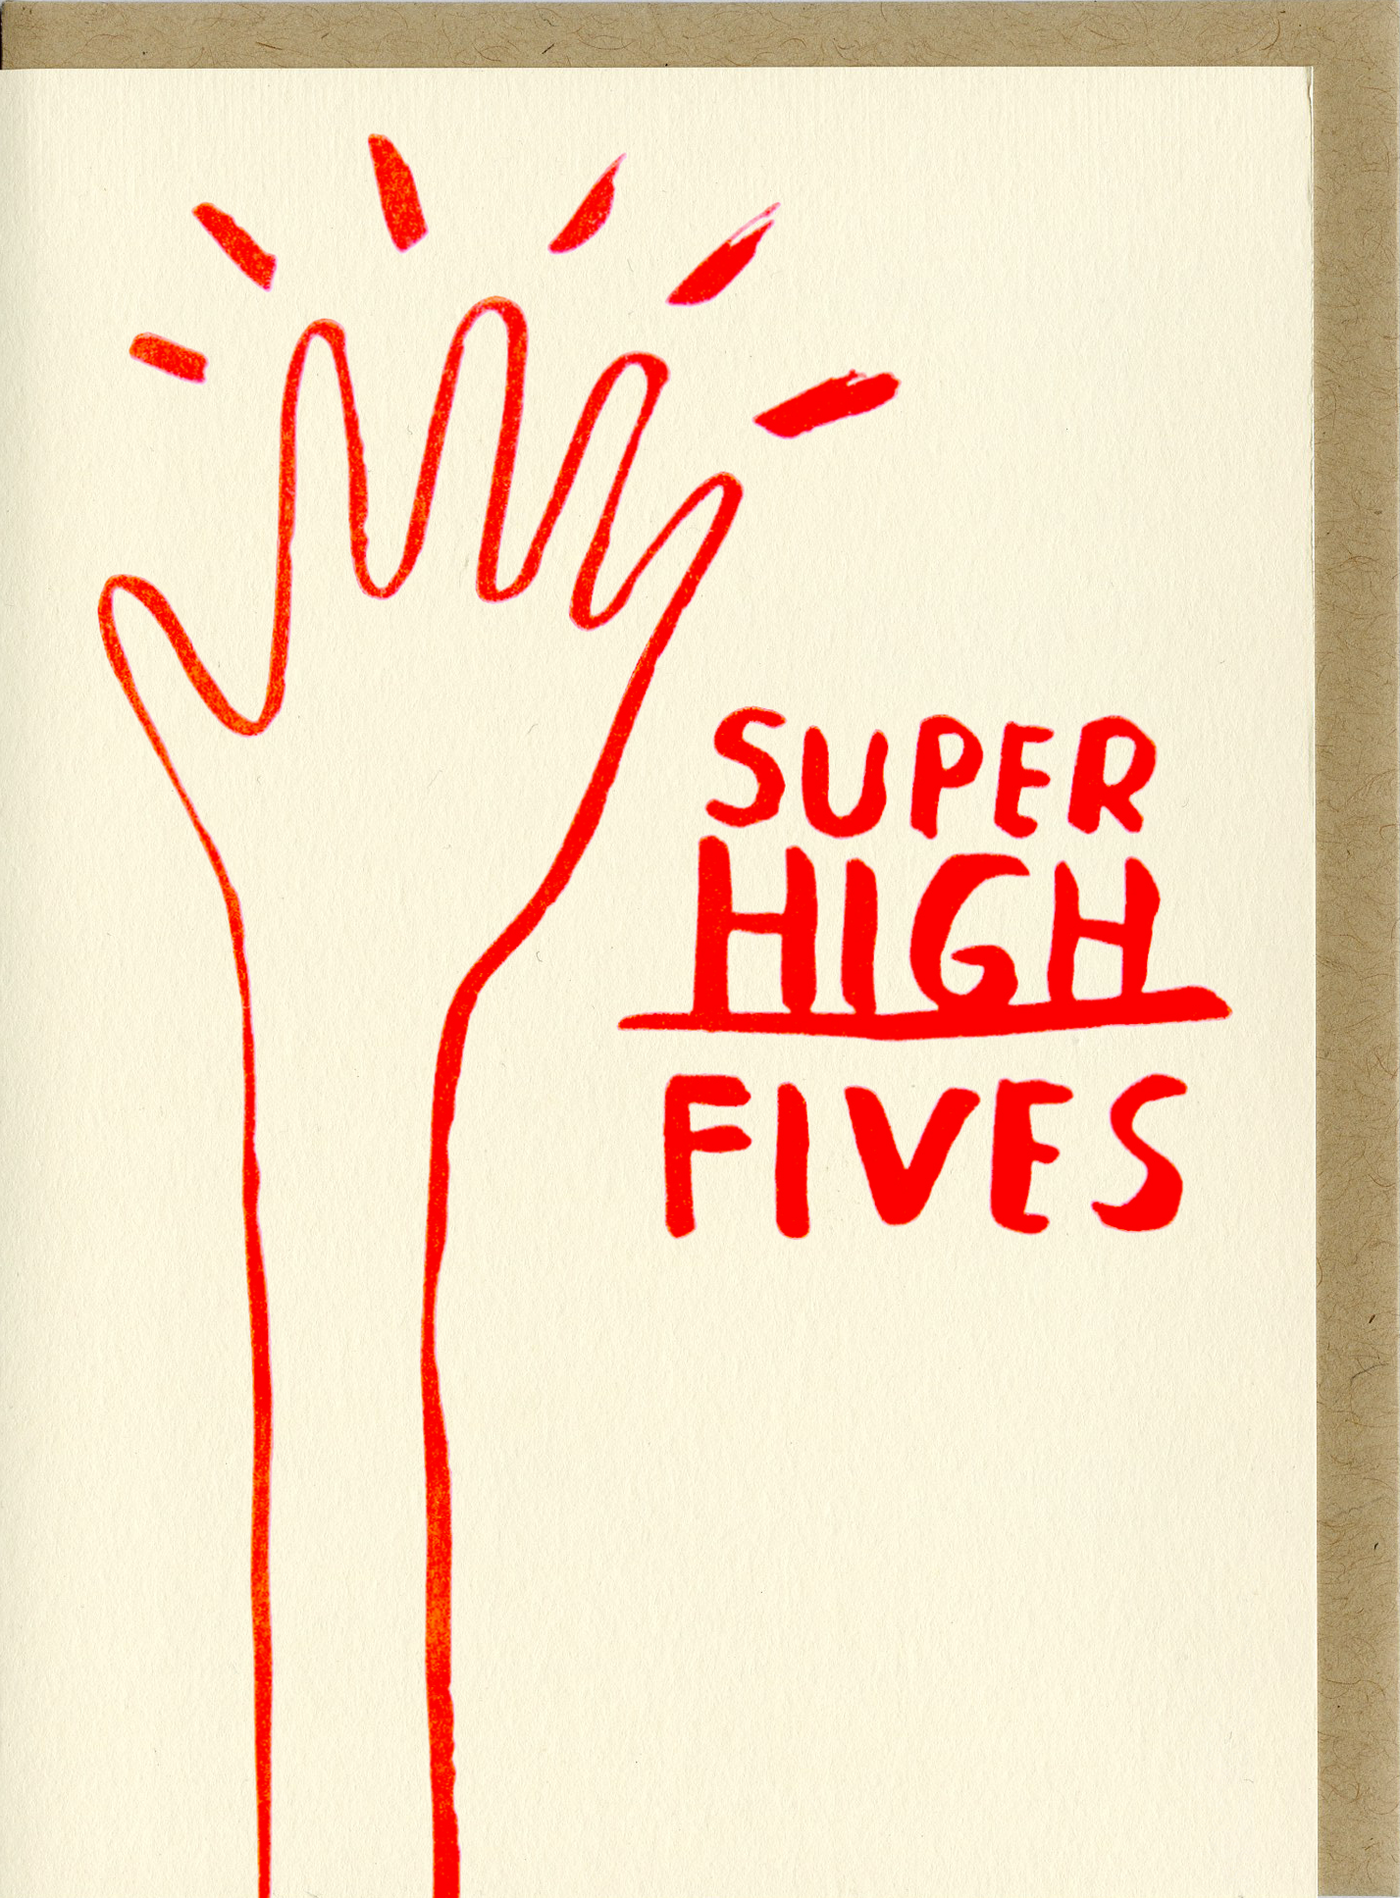 People I've Loved - Super High Fives